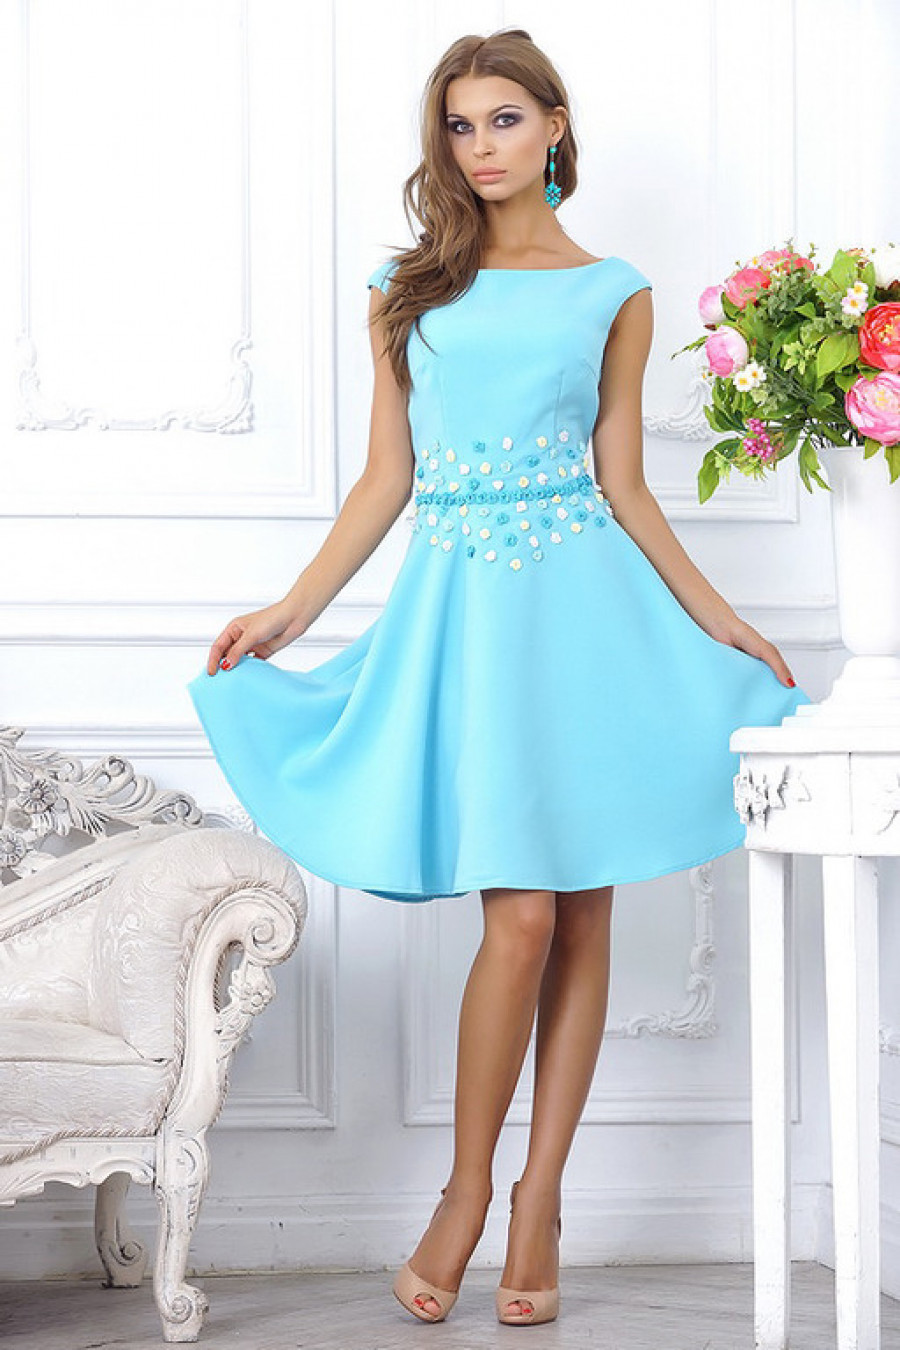 Купить летнее нарядное платье. Голубое платье. Платье голубого цвета. Красивое голубое платье. Плдаите Голуього цветва.